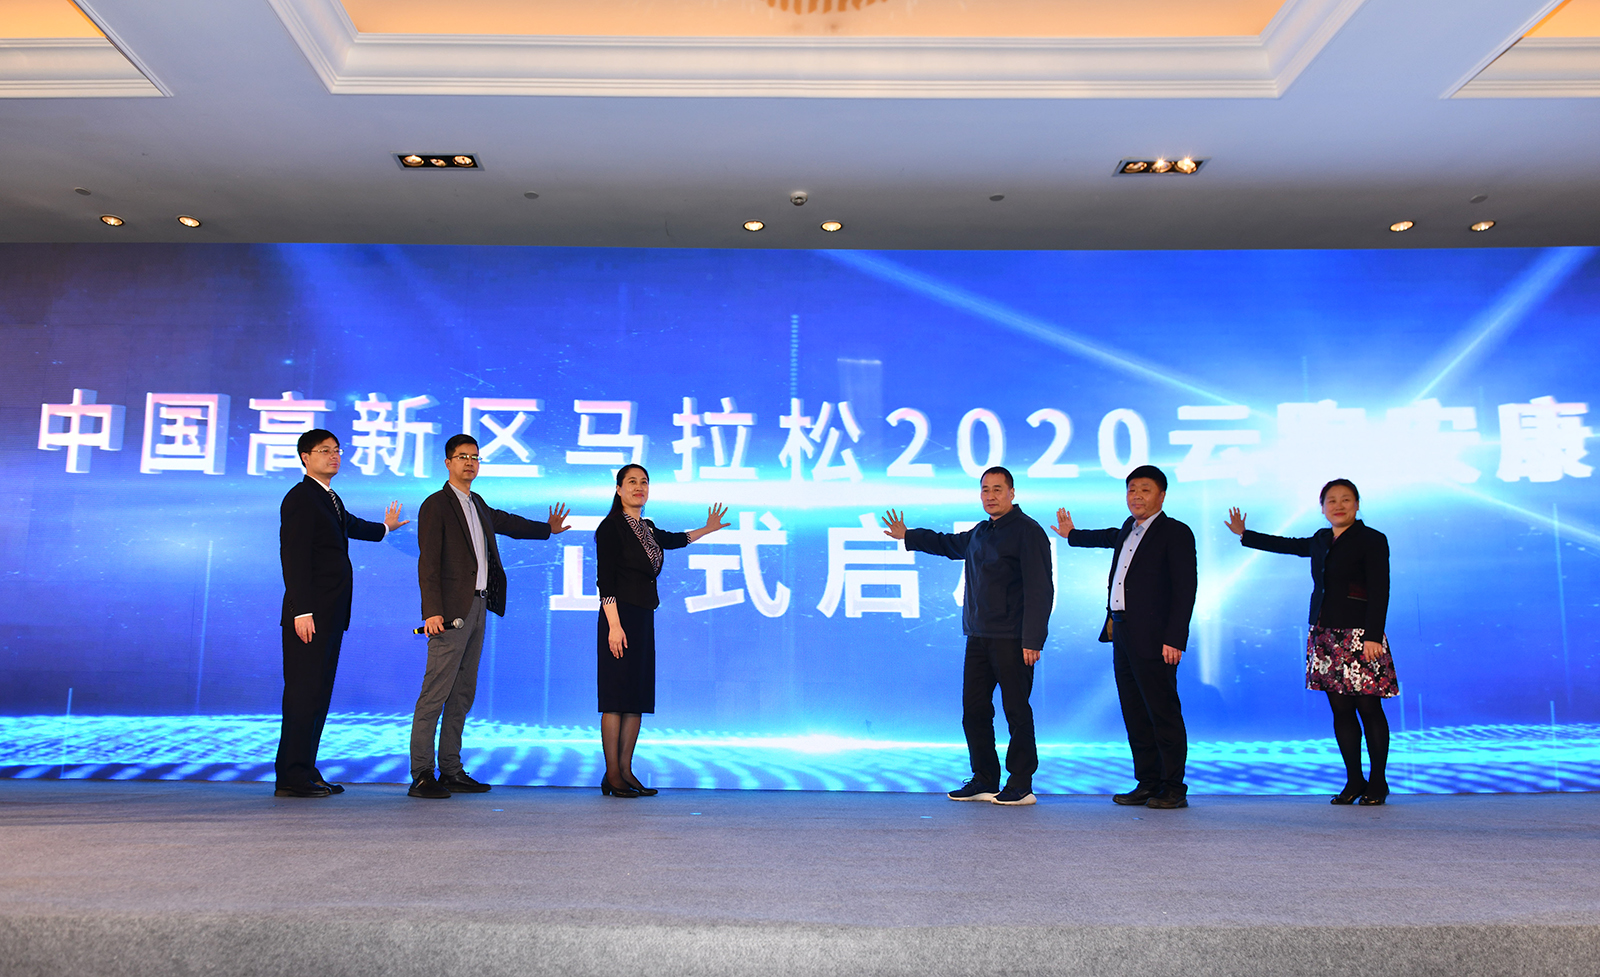 中国高新区马拉松2020云跑安康活动正式启动